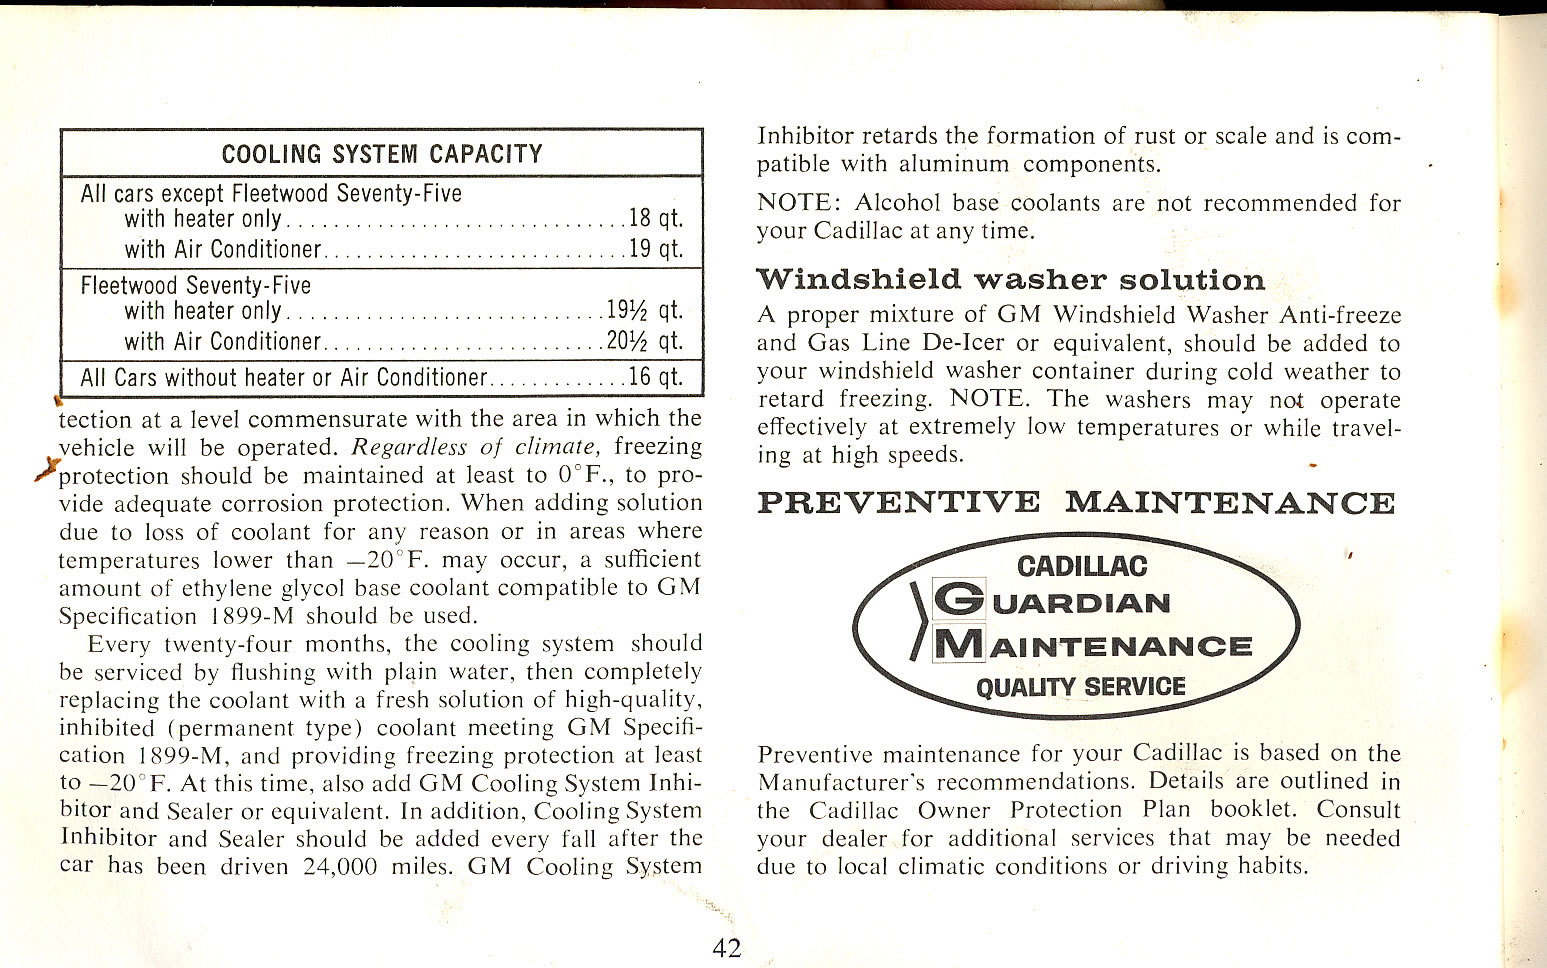 1965 Cadillac Manual-42